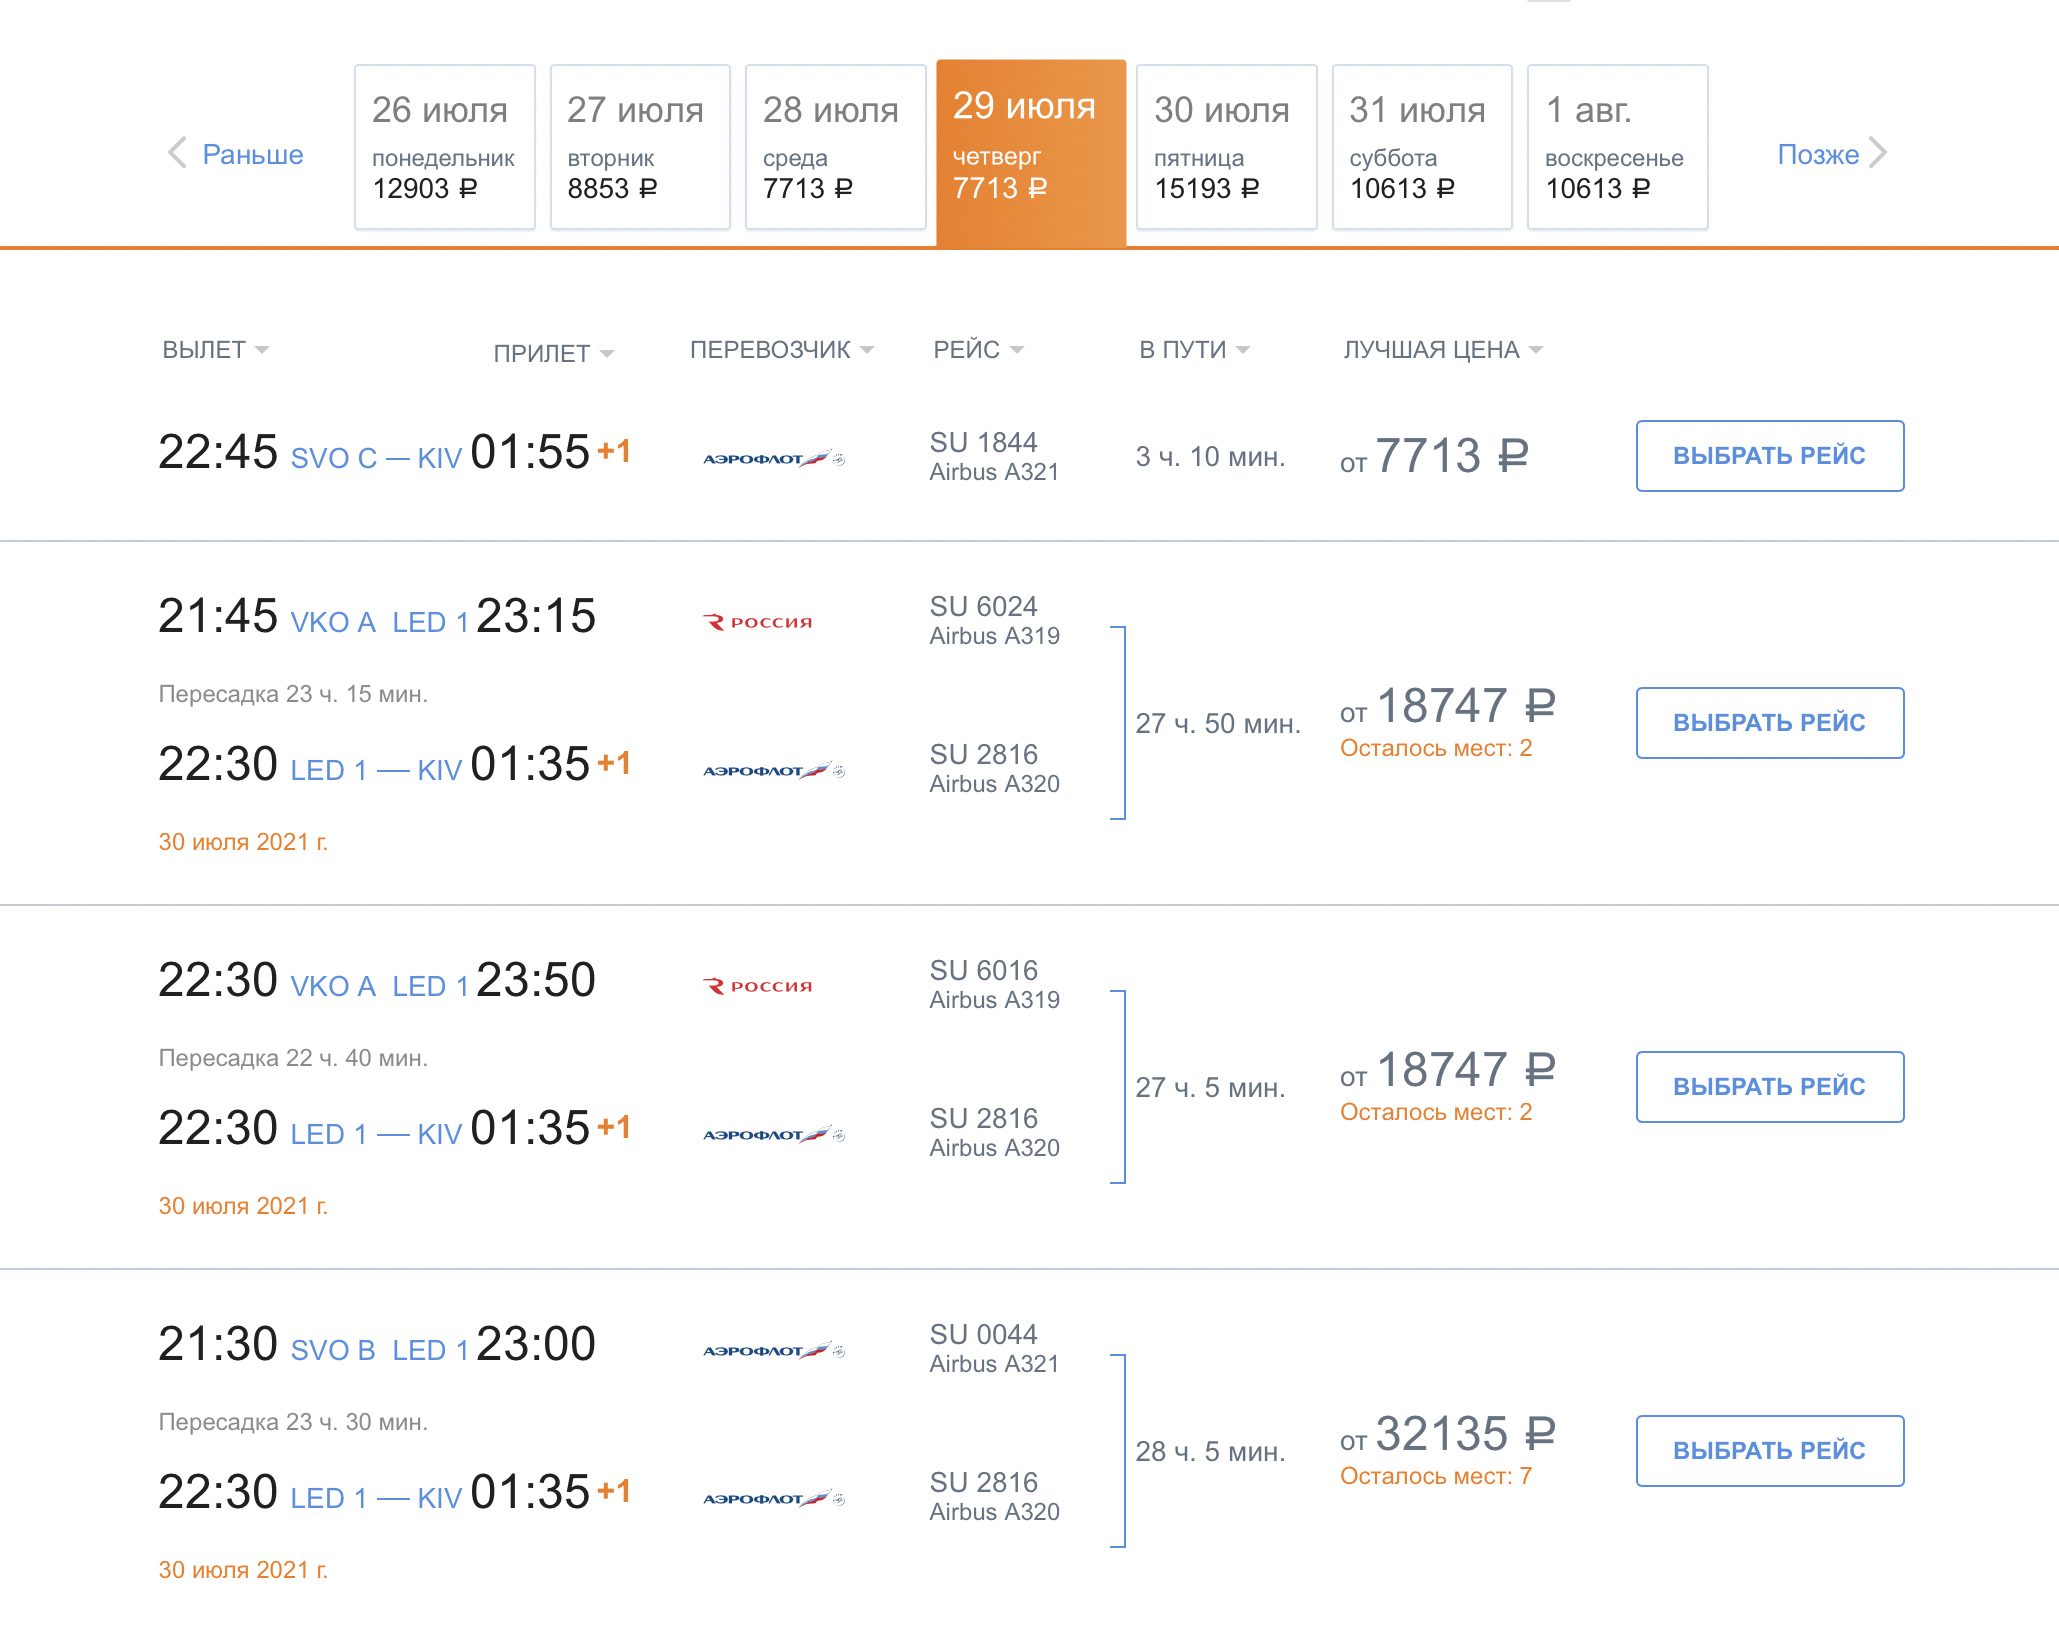 Оперштаб по борьбе с коронавирусом разрешил полеты в Молдавию только с 9 августа. Но в расписании «Аэрофлота» на конец июля было множество рейсов в эту страну. Это значит, что они тоже грузопассажирские